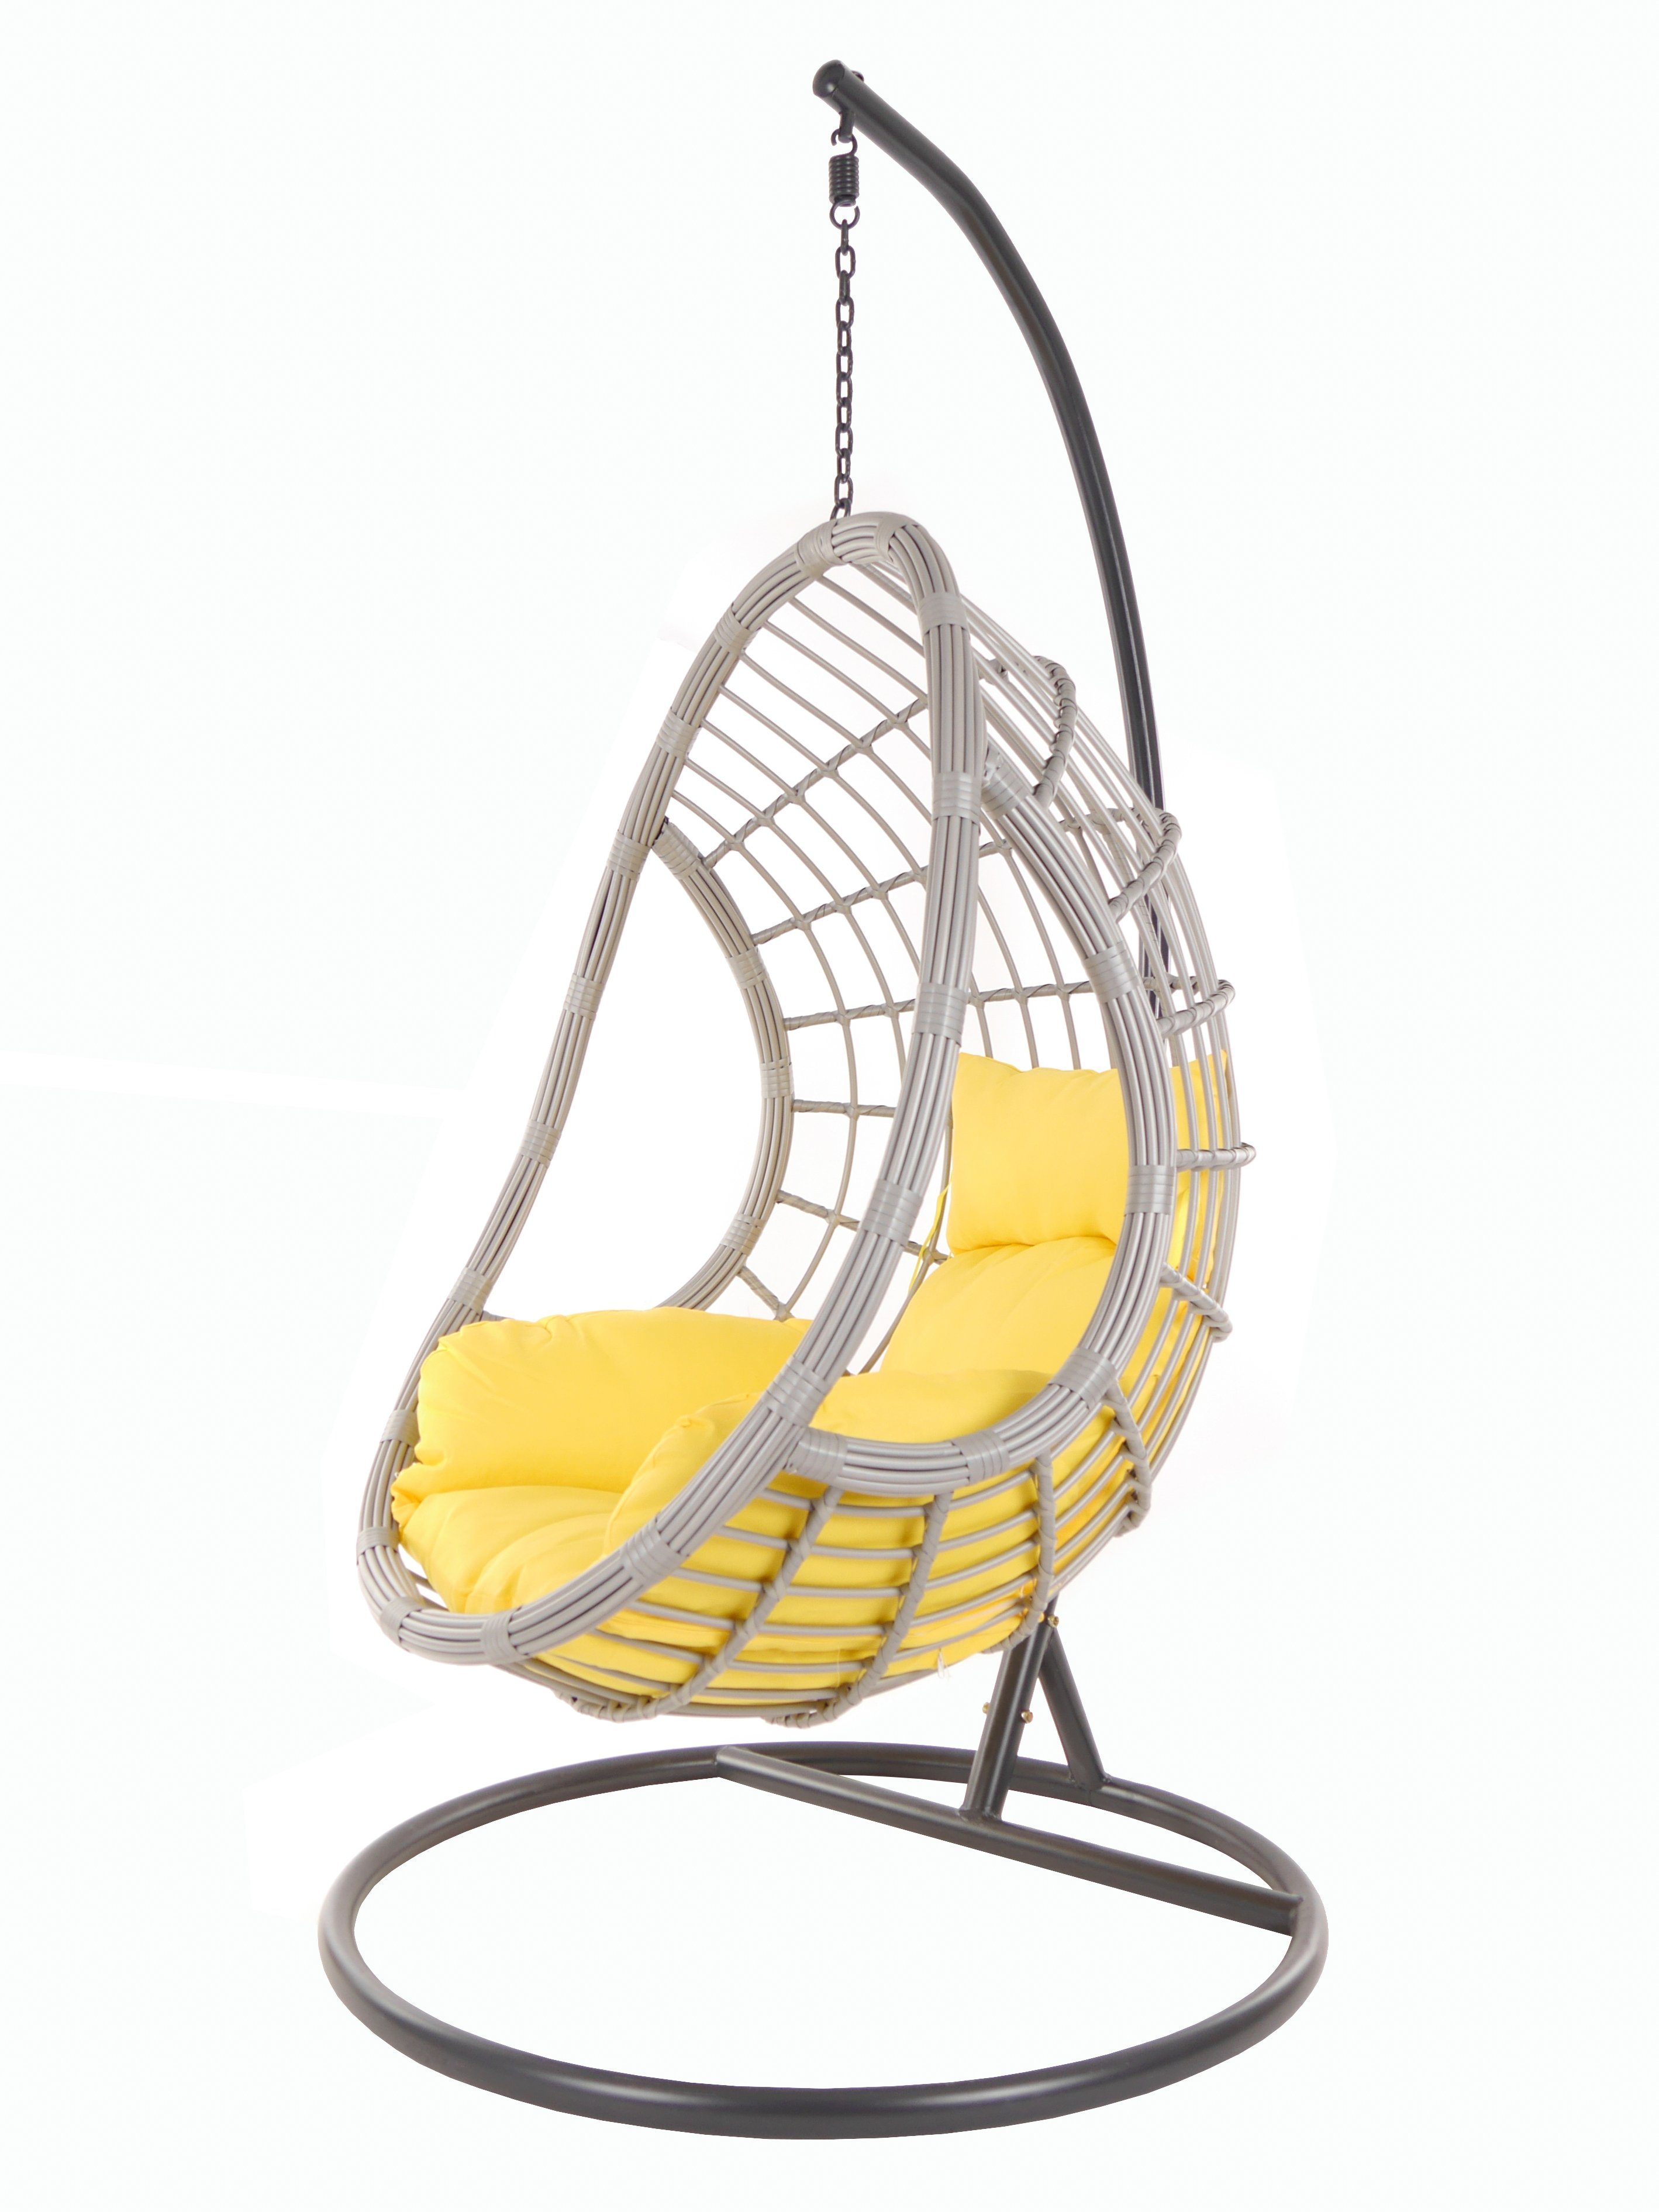 PALMANOVA Hängesessel Swing gelb KIDEO Chair, lightgrey, Kissen, Gestell Schwebesessel (2200 Loungemöbel mit und pineapple)